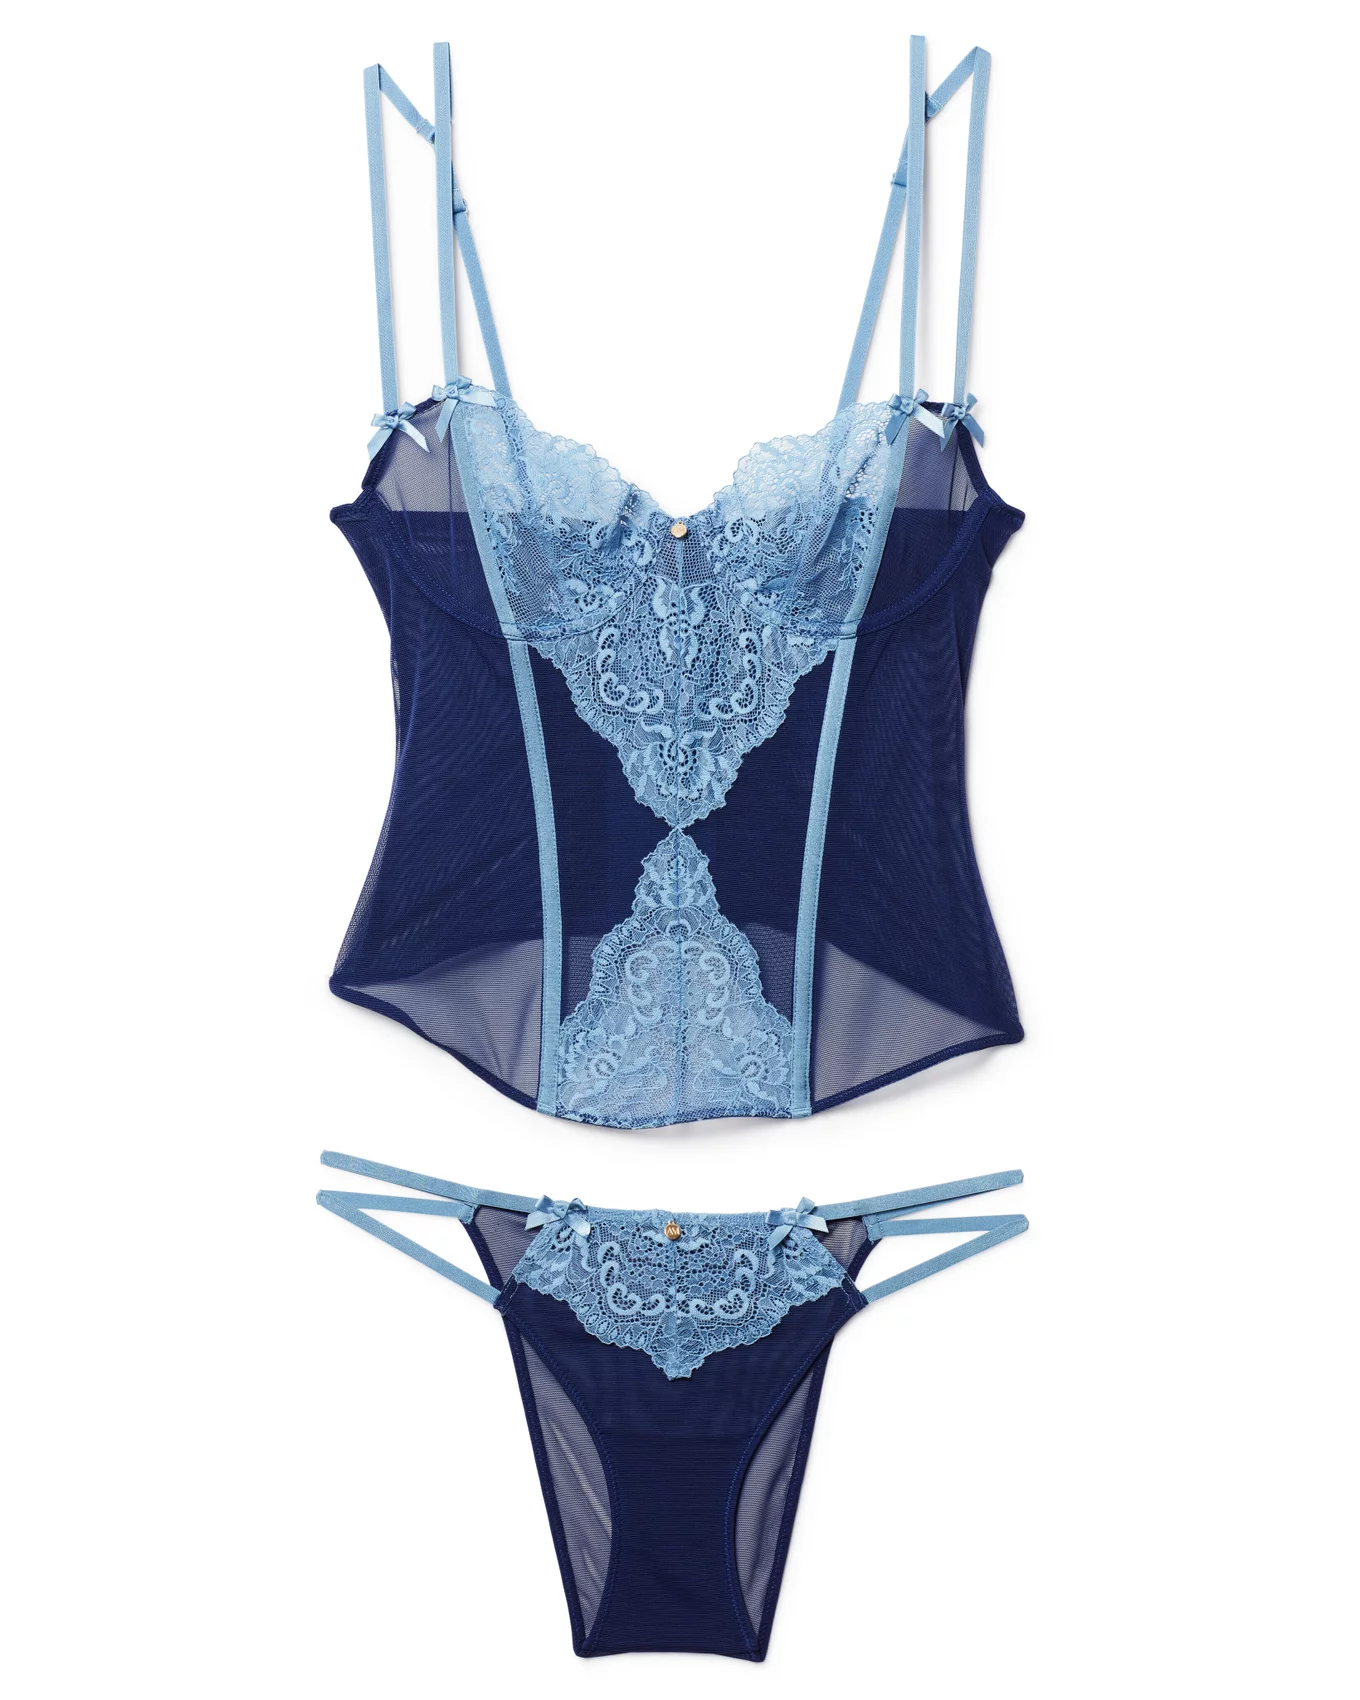 Buy online Navy Blue Velvet Corset Bra from lingerie for Women by Da Intimo  for ₹770 at 45% off